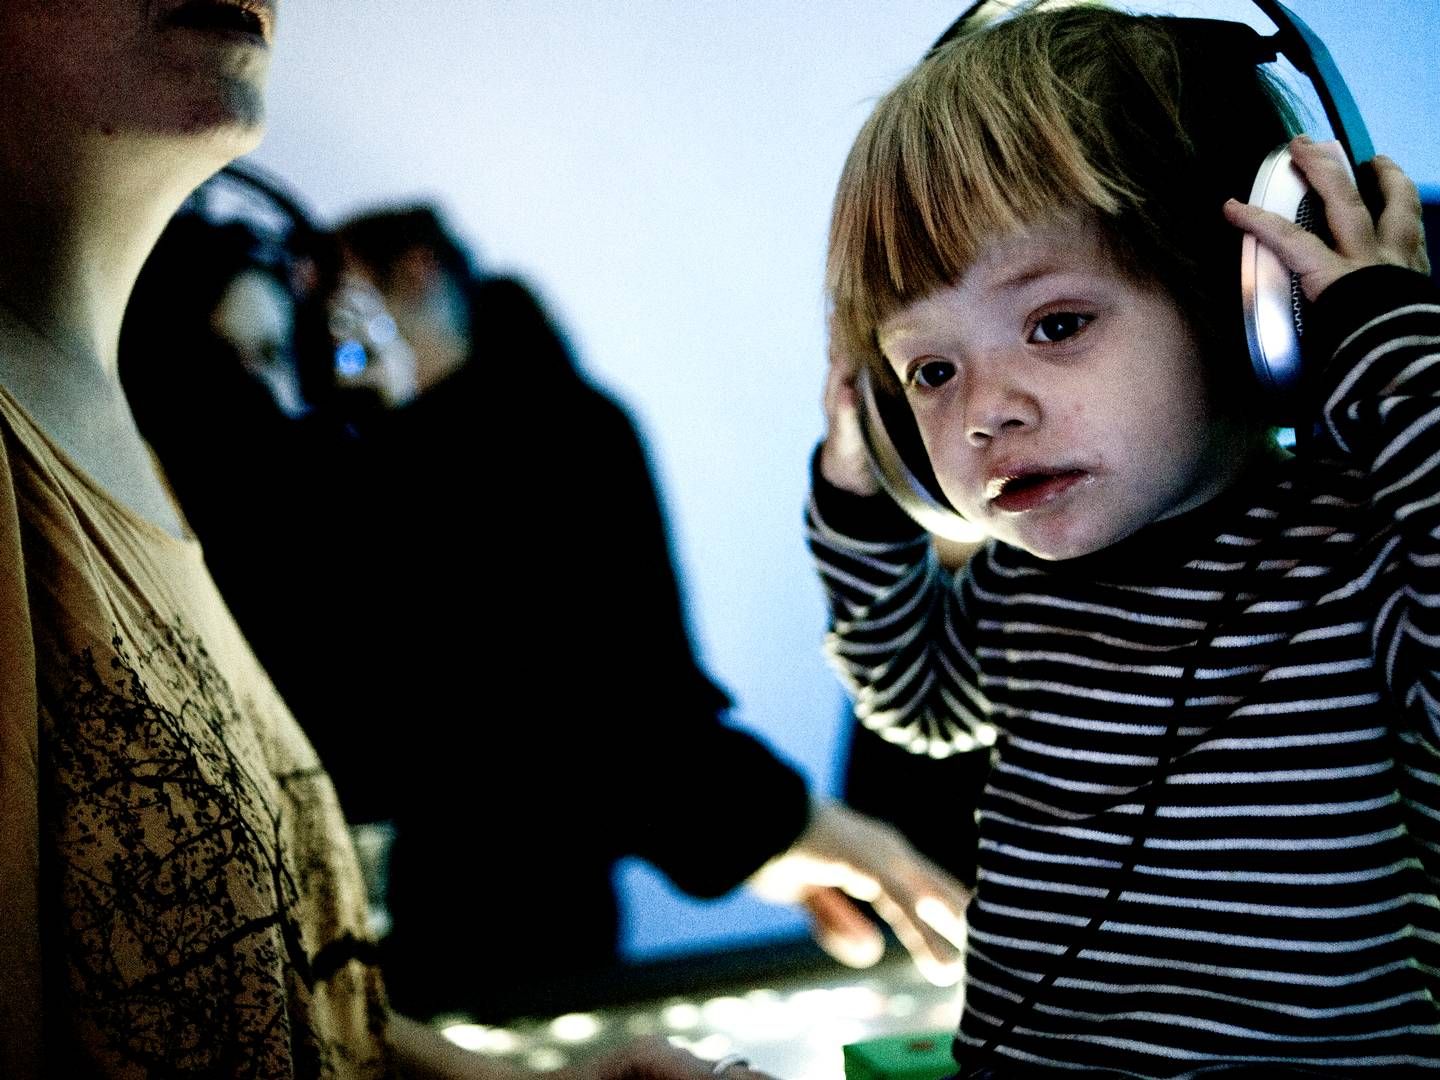 Formålet med lyduniverset er at få en privat aktør til at lave public service-lydindhold til børn i alderen 3-13 år. | Foto: Helle Arensbak/Jyllands-Posten/Ritzau Scanpix